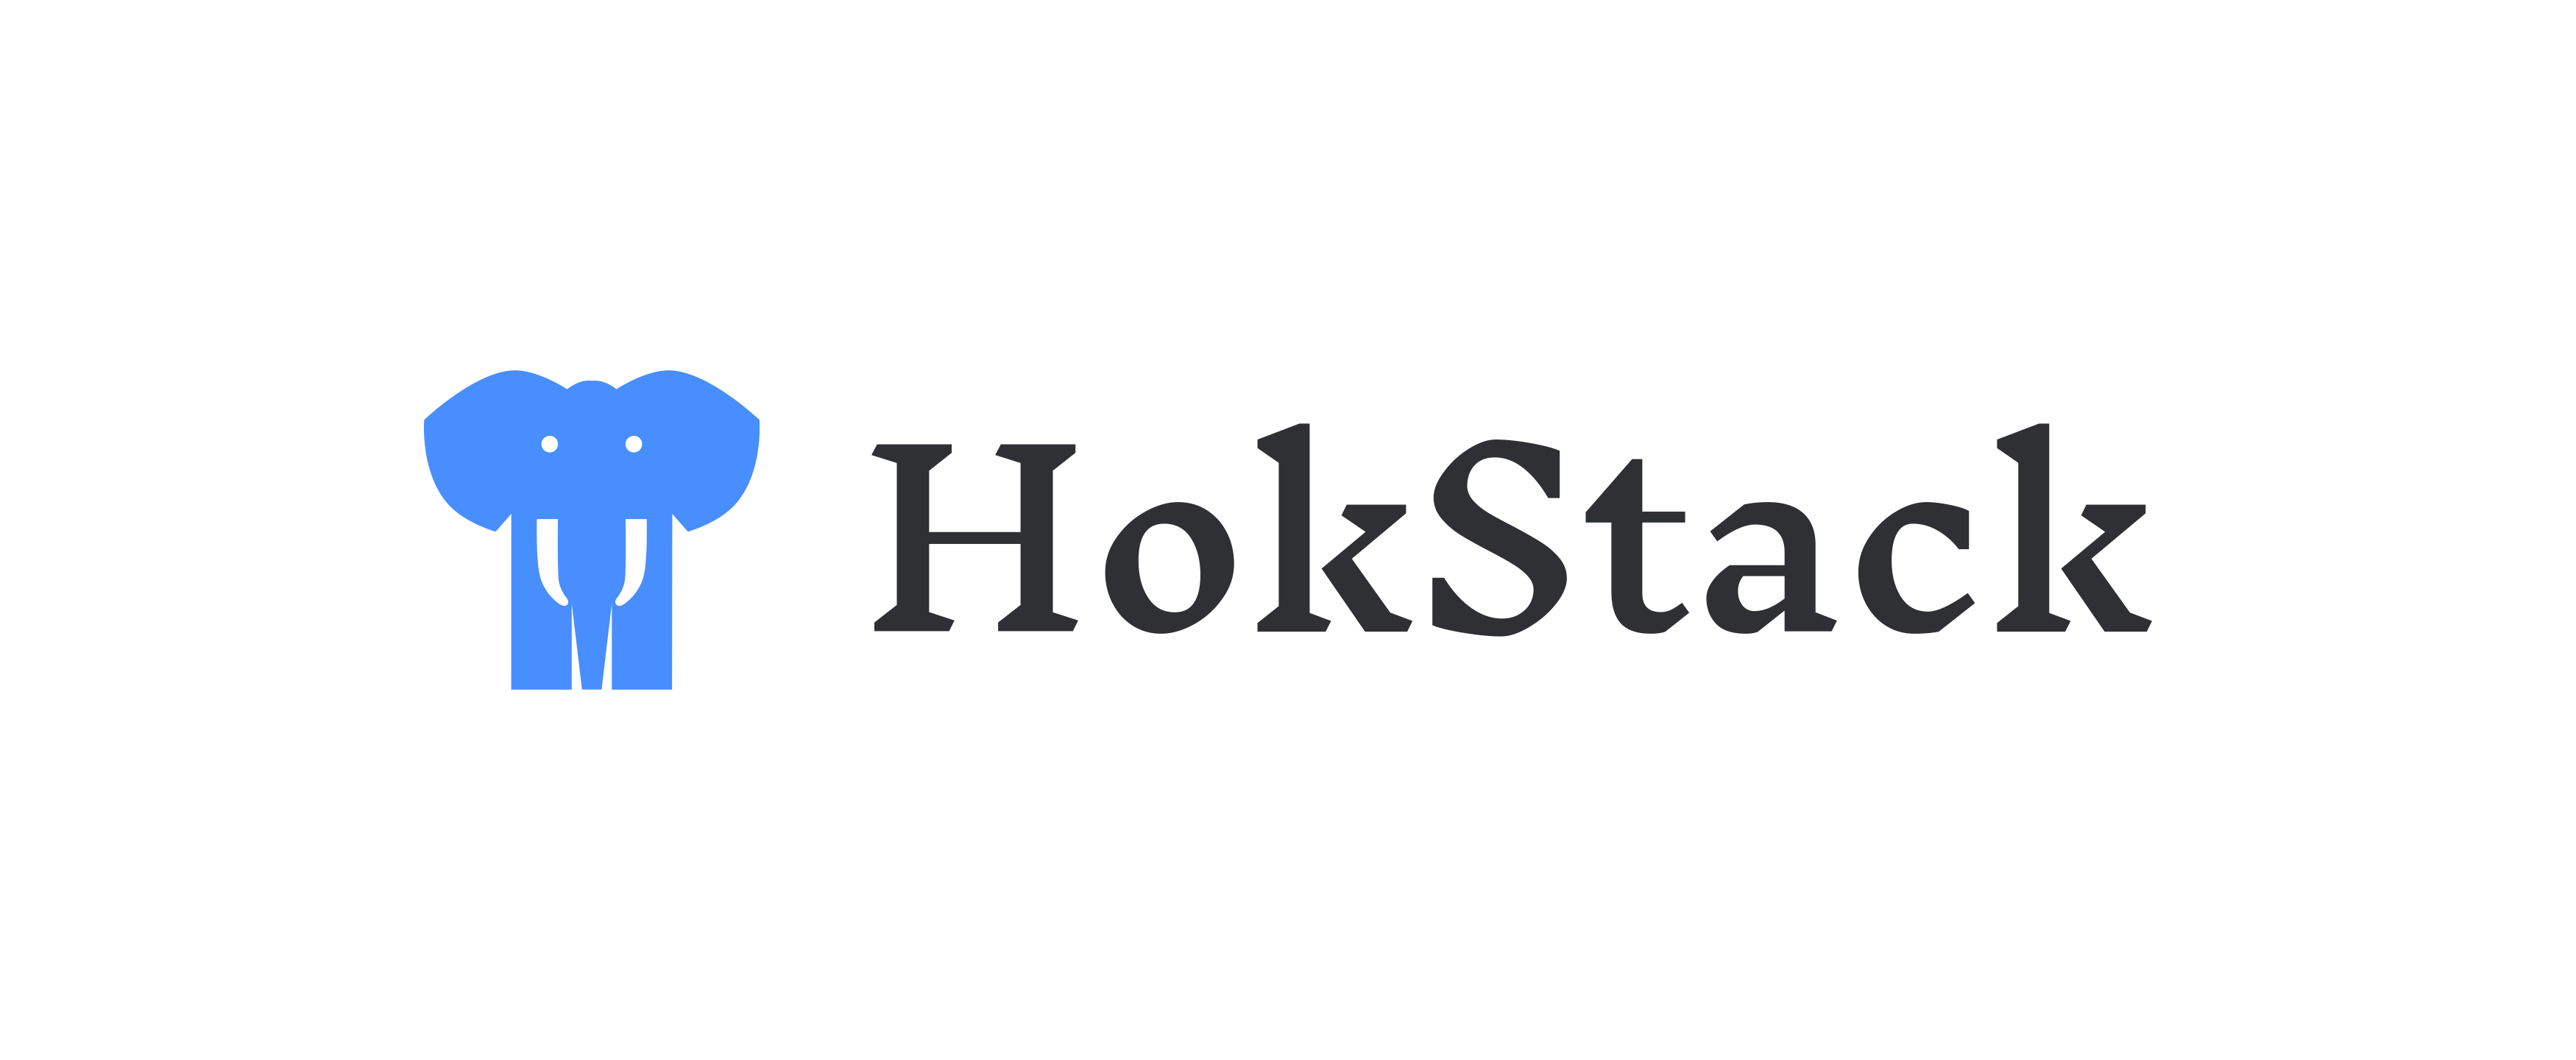 HokStack